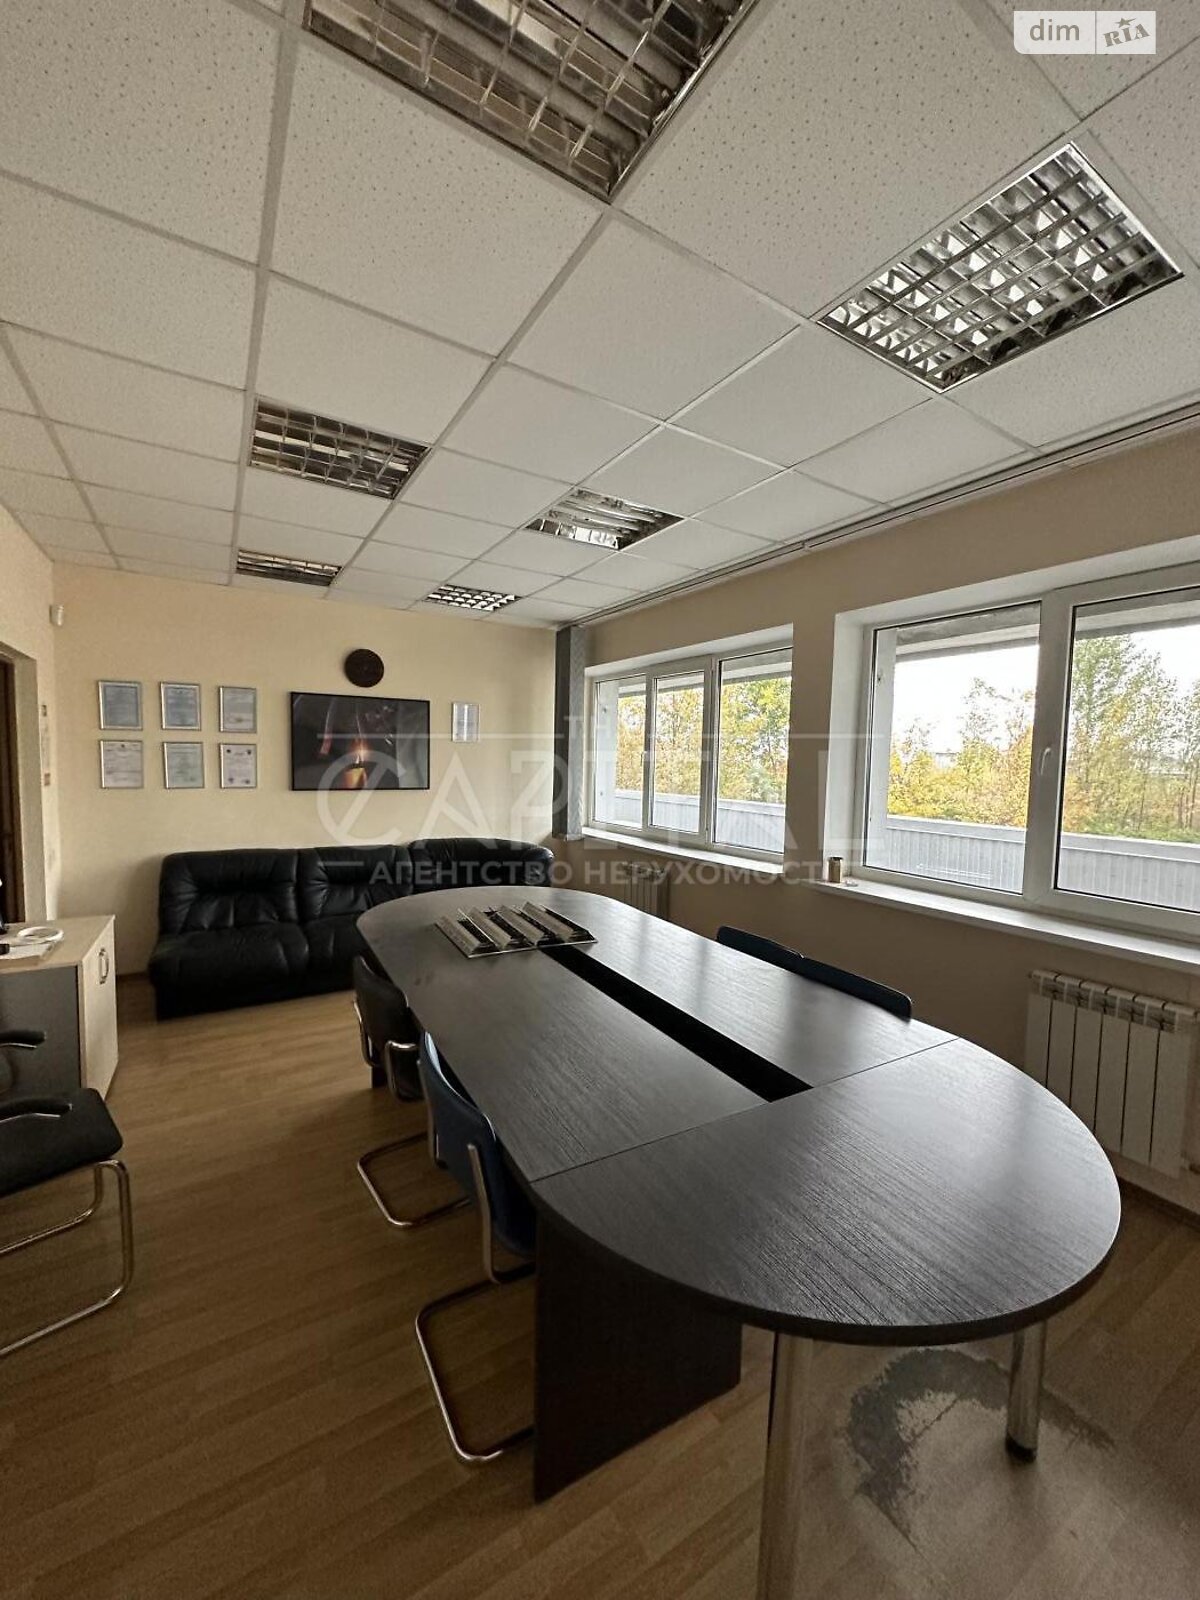 Аренда офисного помещения в Киеве, Святослава Храброго улица 26А, помещений - 15, этаж - 1 фото 1